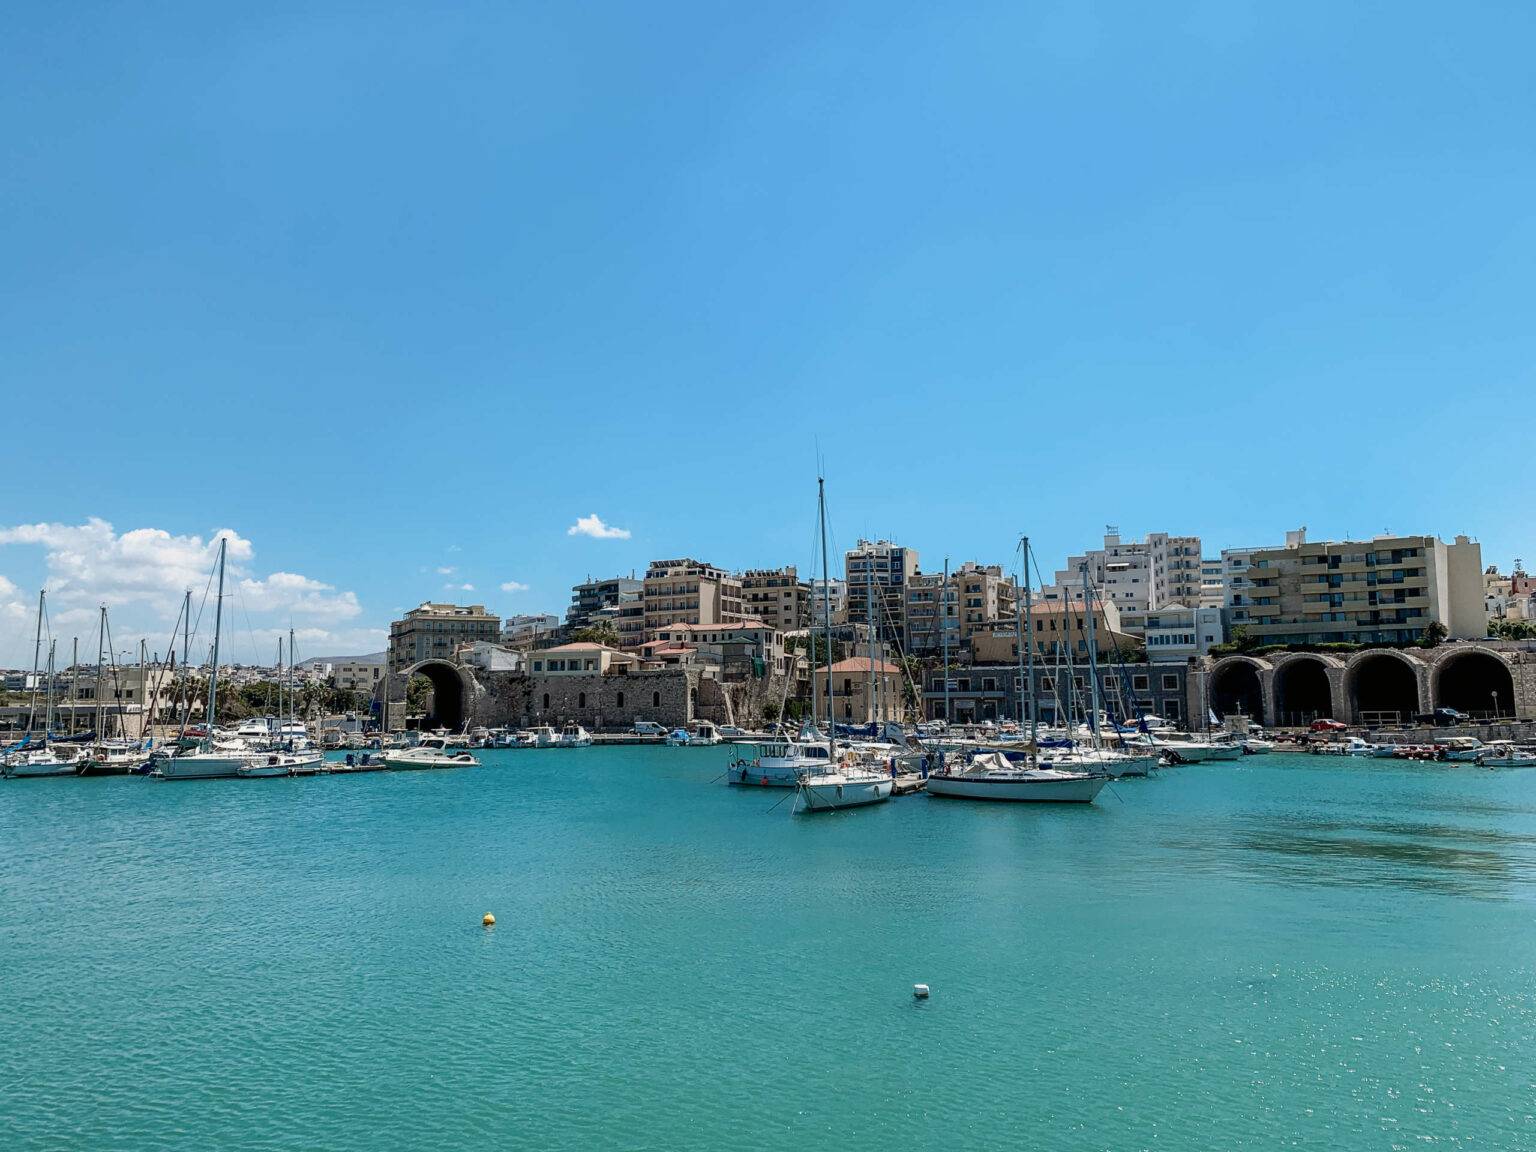 Zahlreiche Boote liegen im Hafen von Heraklion, der Hauptstadt von Kreta. Hinter dem Hafen stehen einige Hochhäuser.